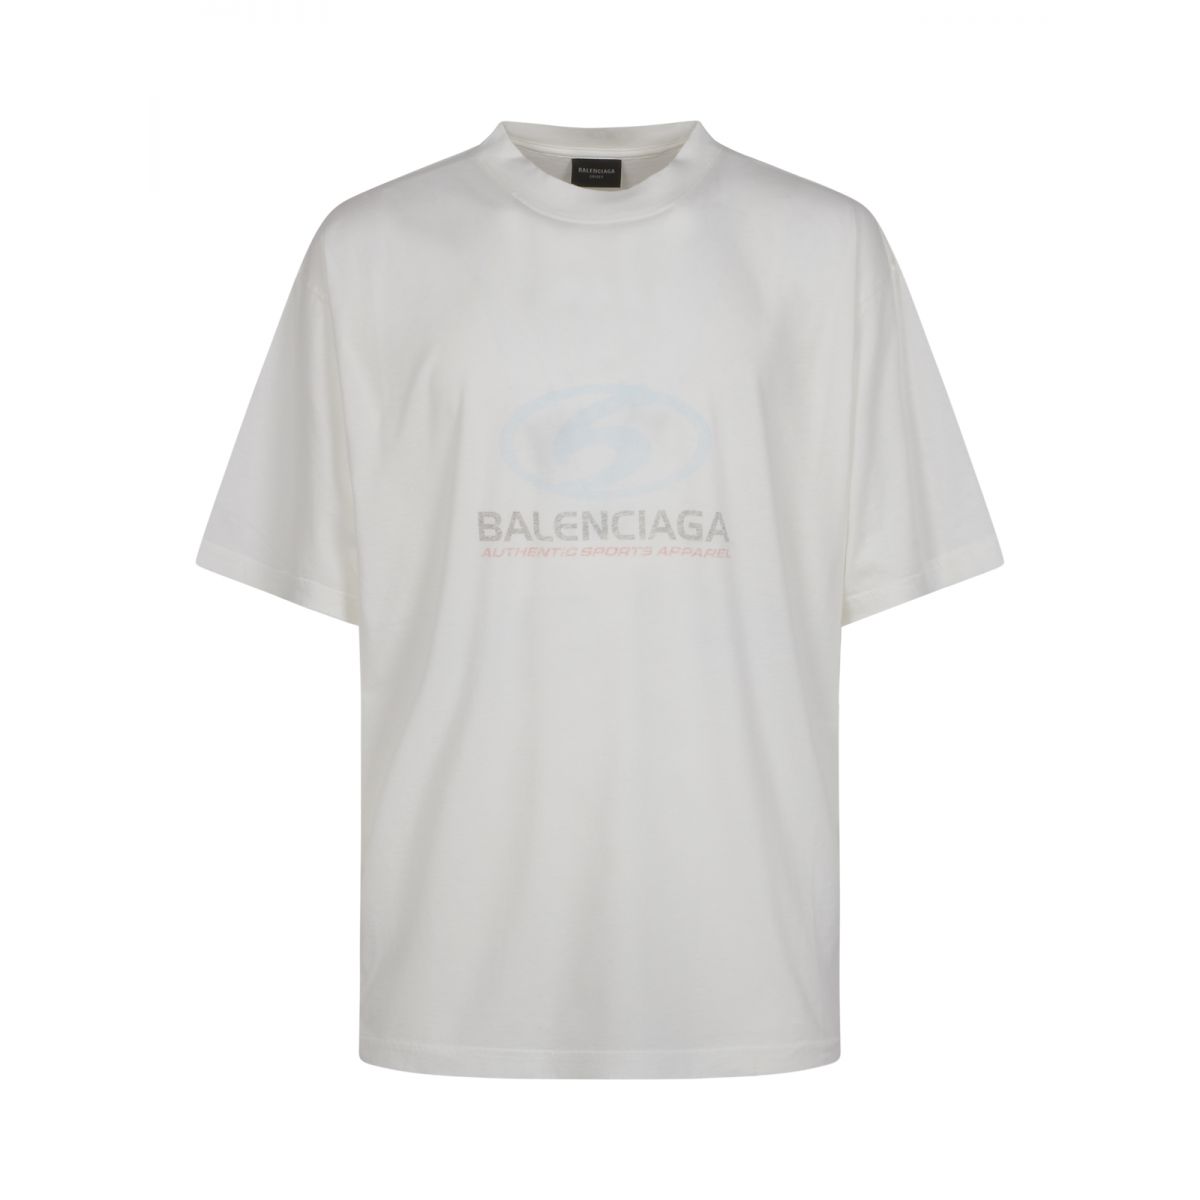 BALENCIAGA - White medium fit surfer t-shirt